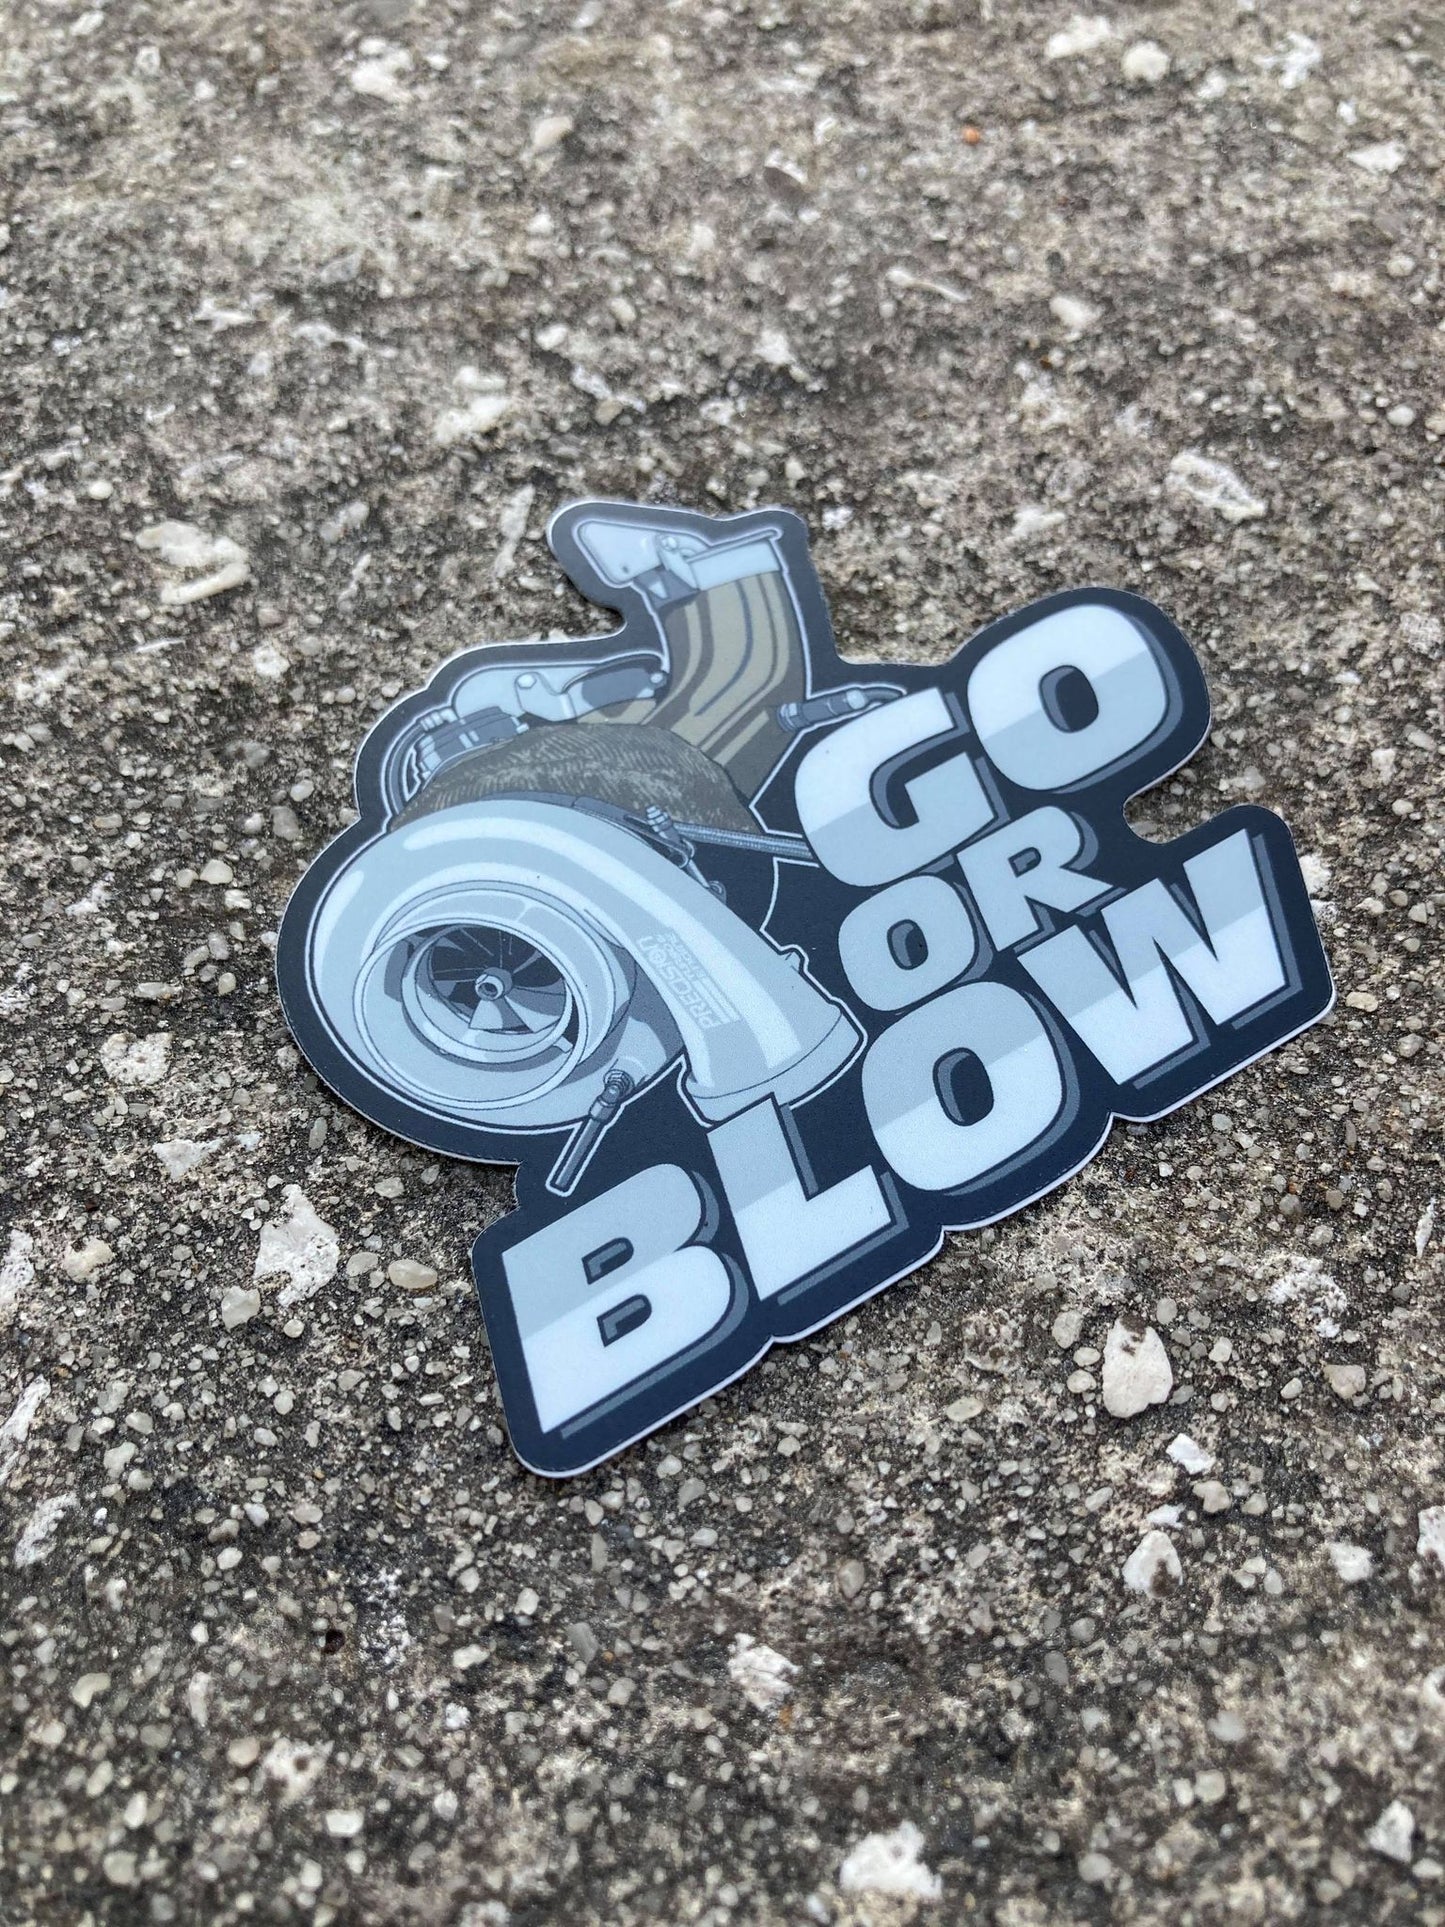 Go or Blow Sticker